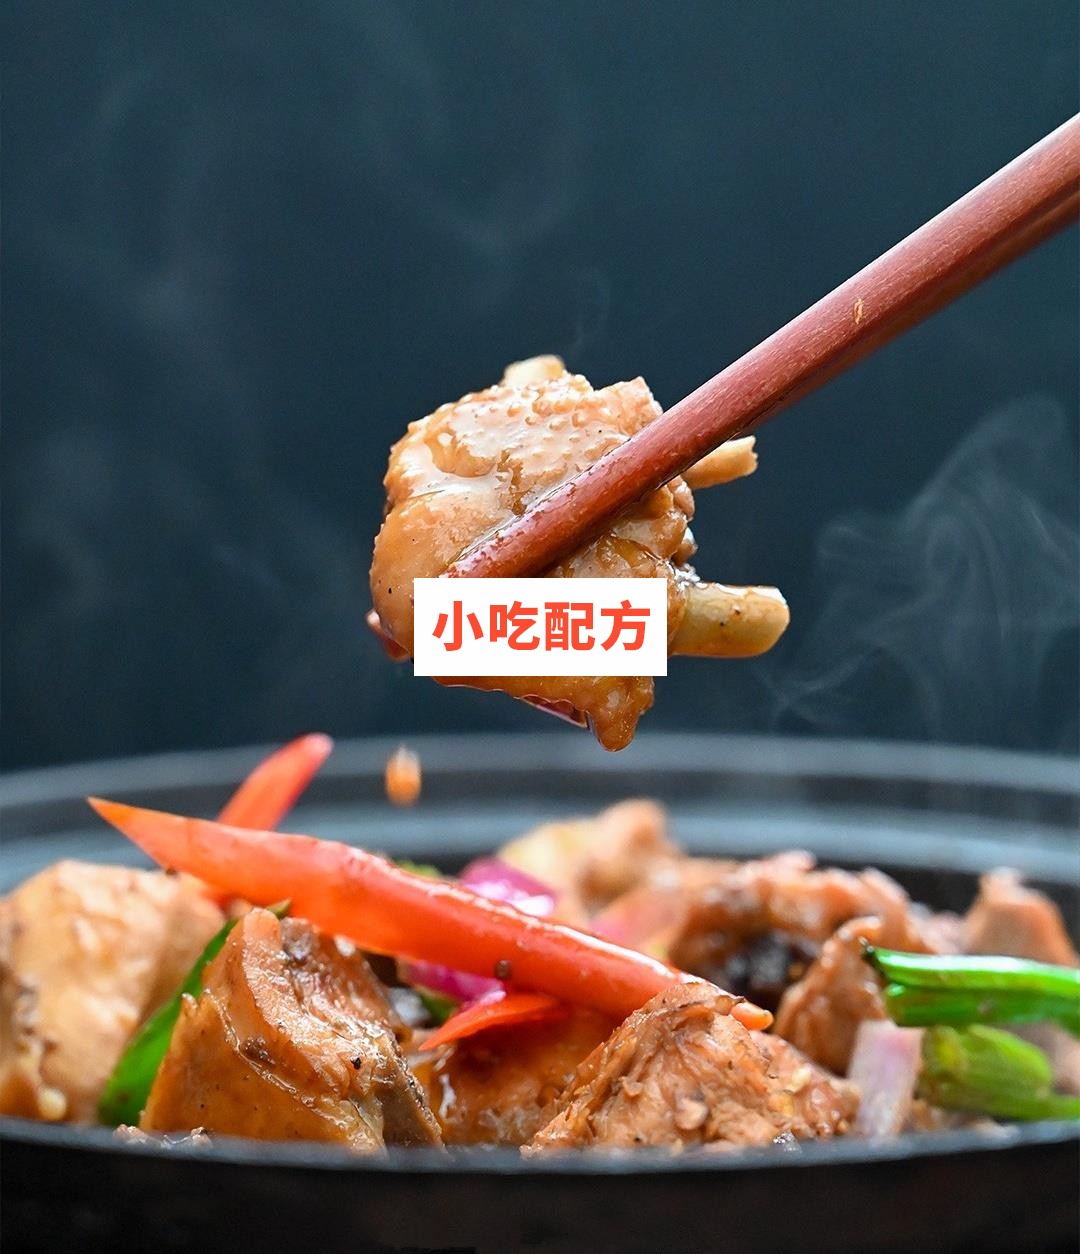 重庆鸡公煲技术配方视频教程 小吃技术联盟配方资料 第2张